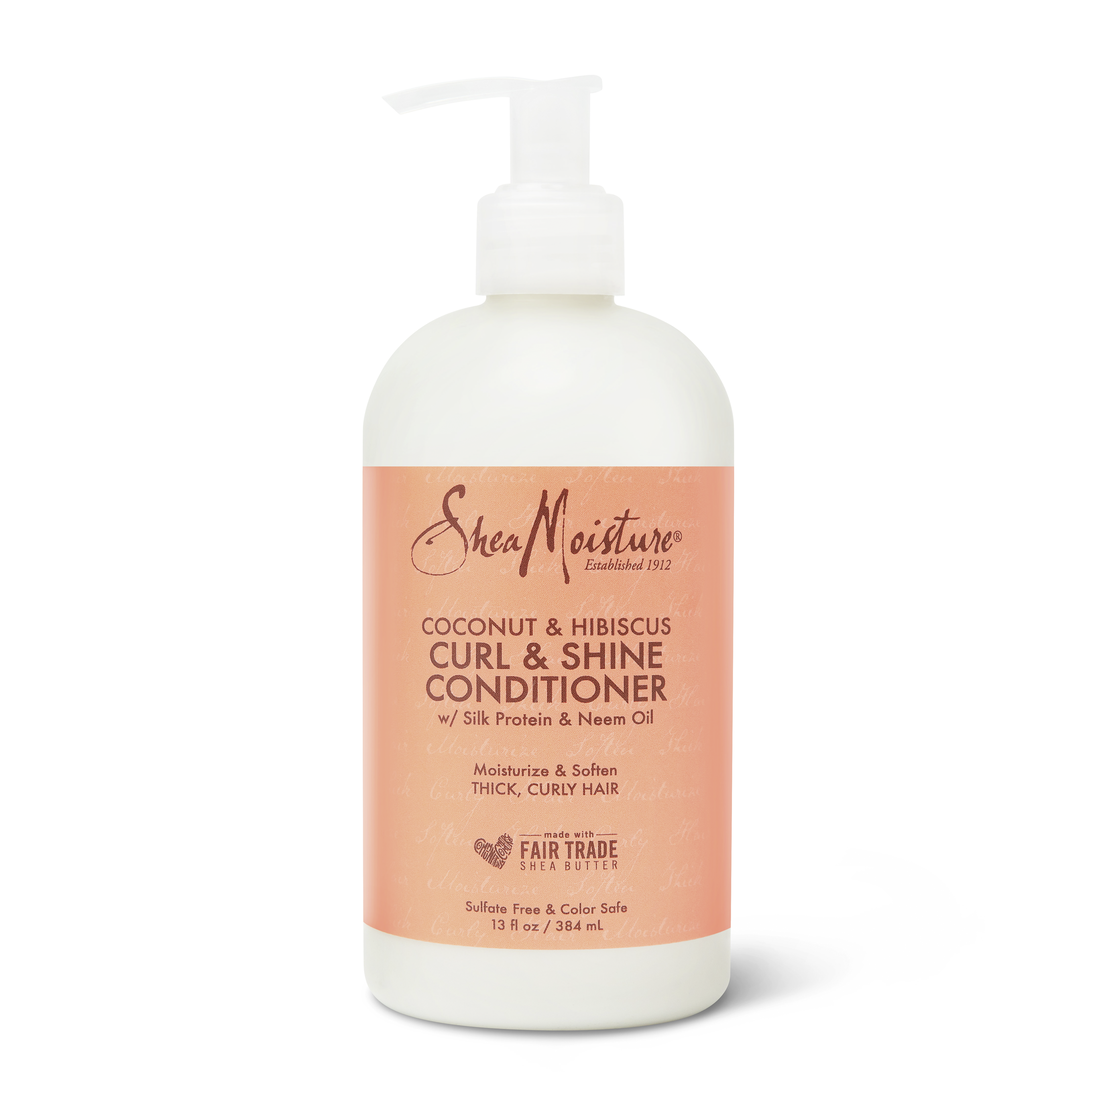 SheaMoisture Coconut & Hibiscus Curl & Shine Conditioner 384mL